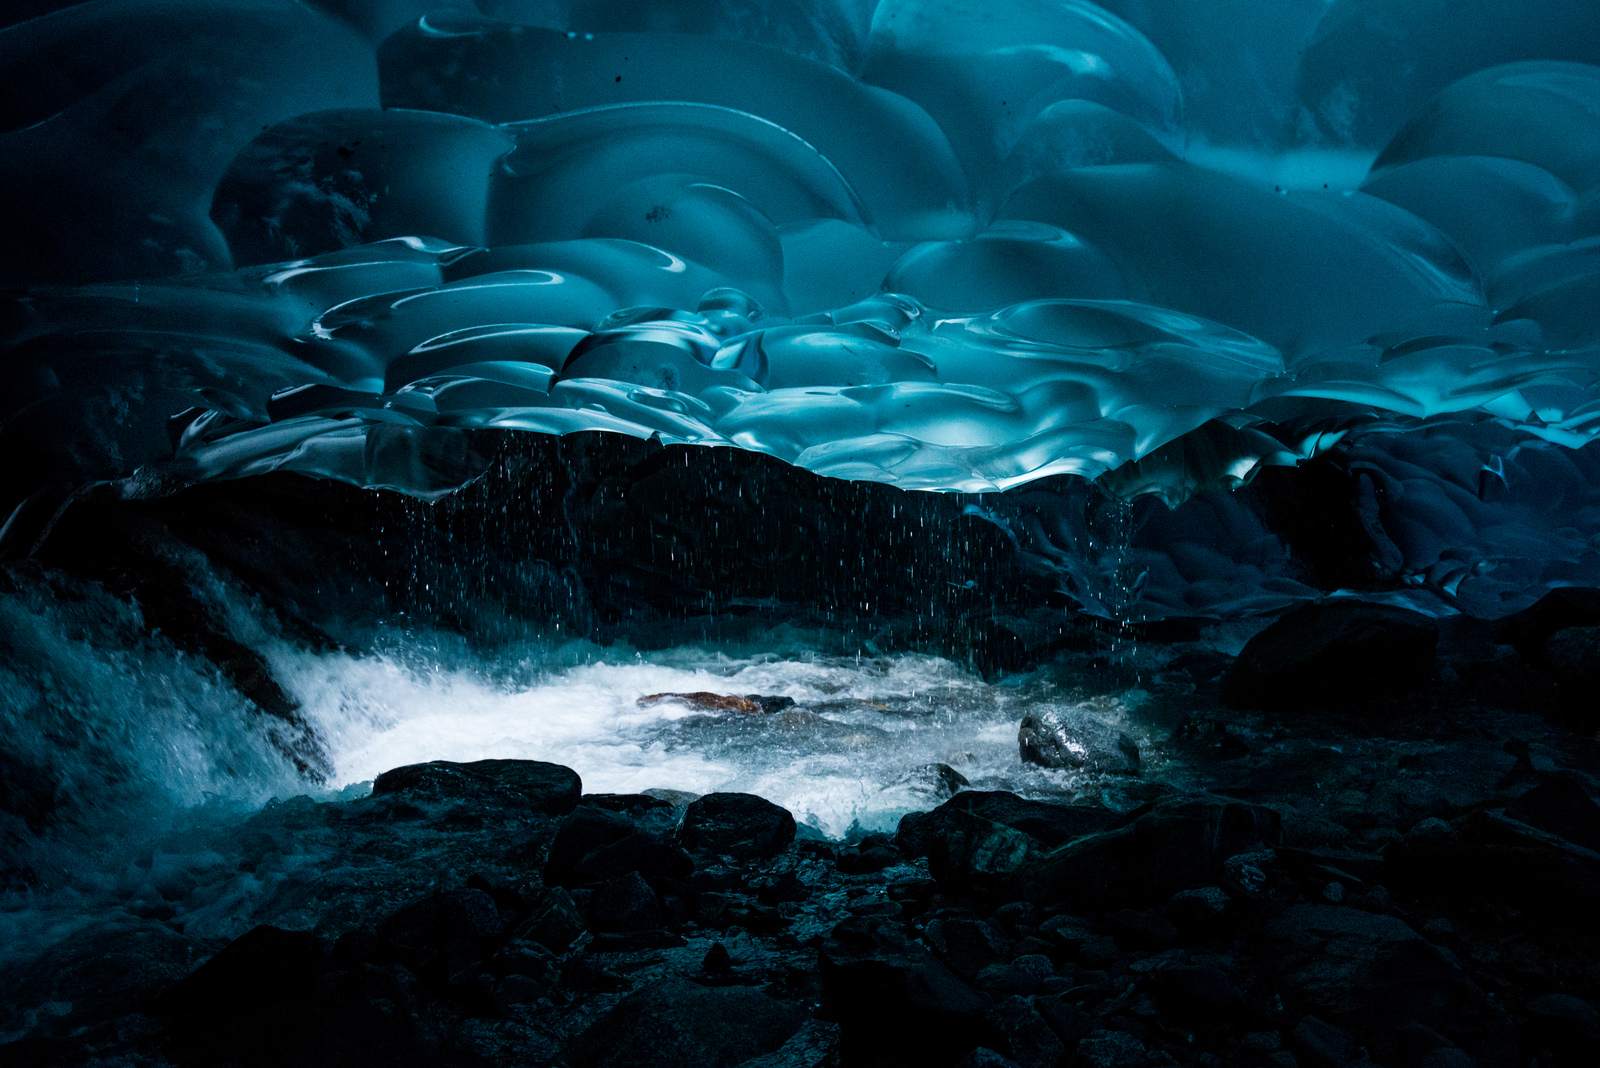 mendenhall Ice Caves under the Mendenhall Glacier in Juneau, Alaska